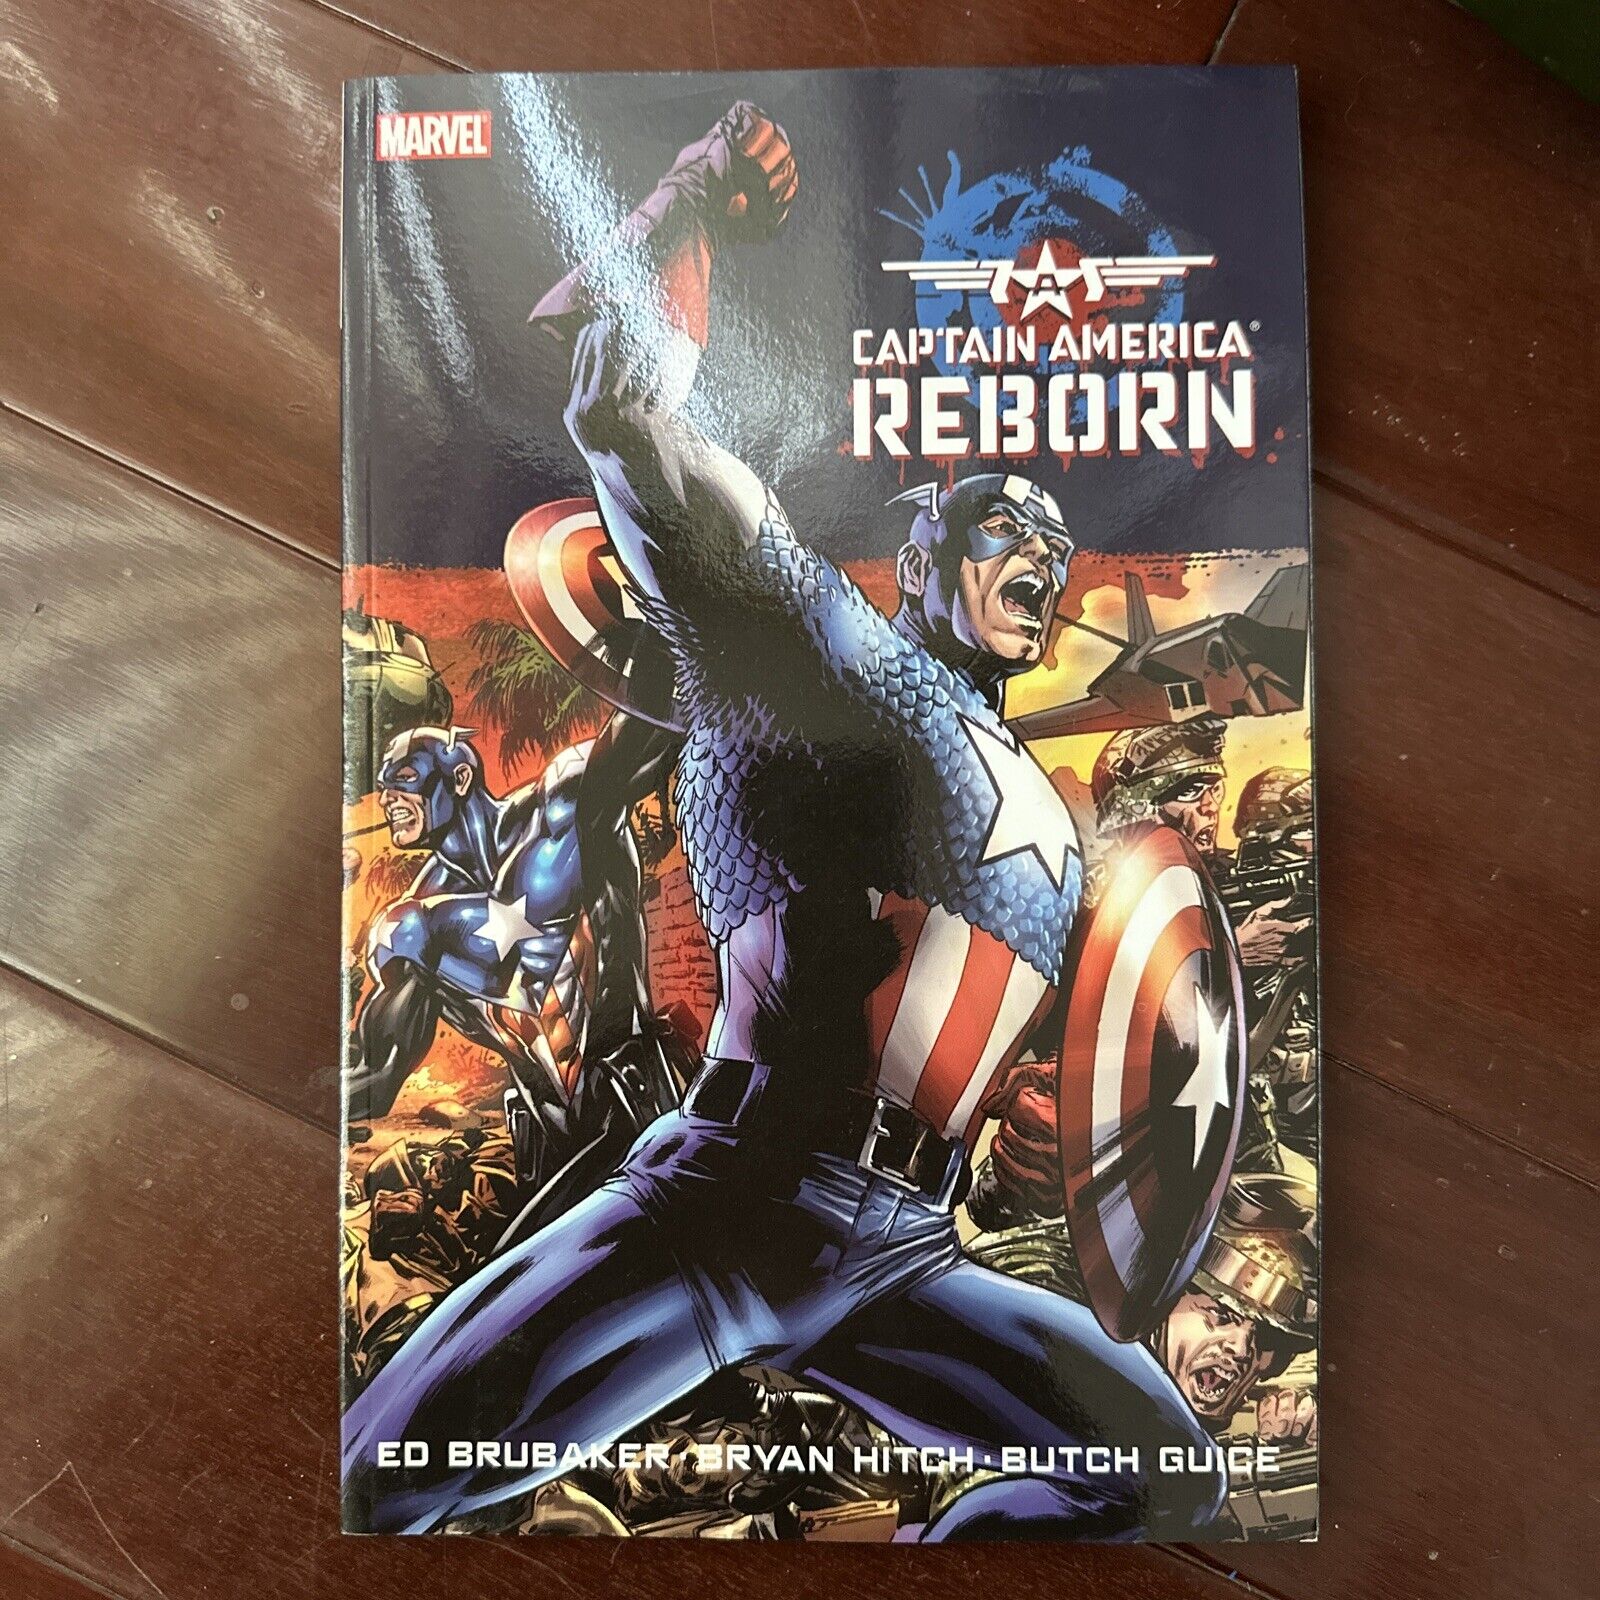 Captain America: Reborn (Marvel Comics September 2010)